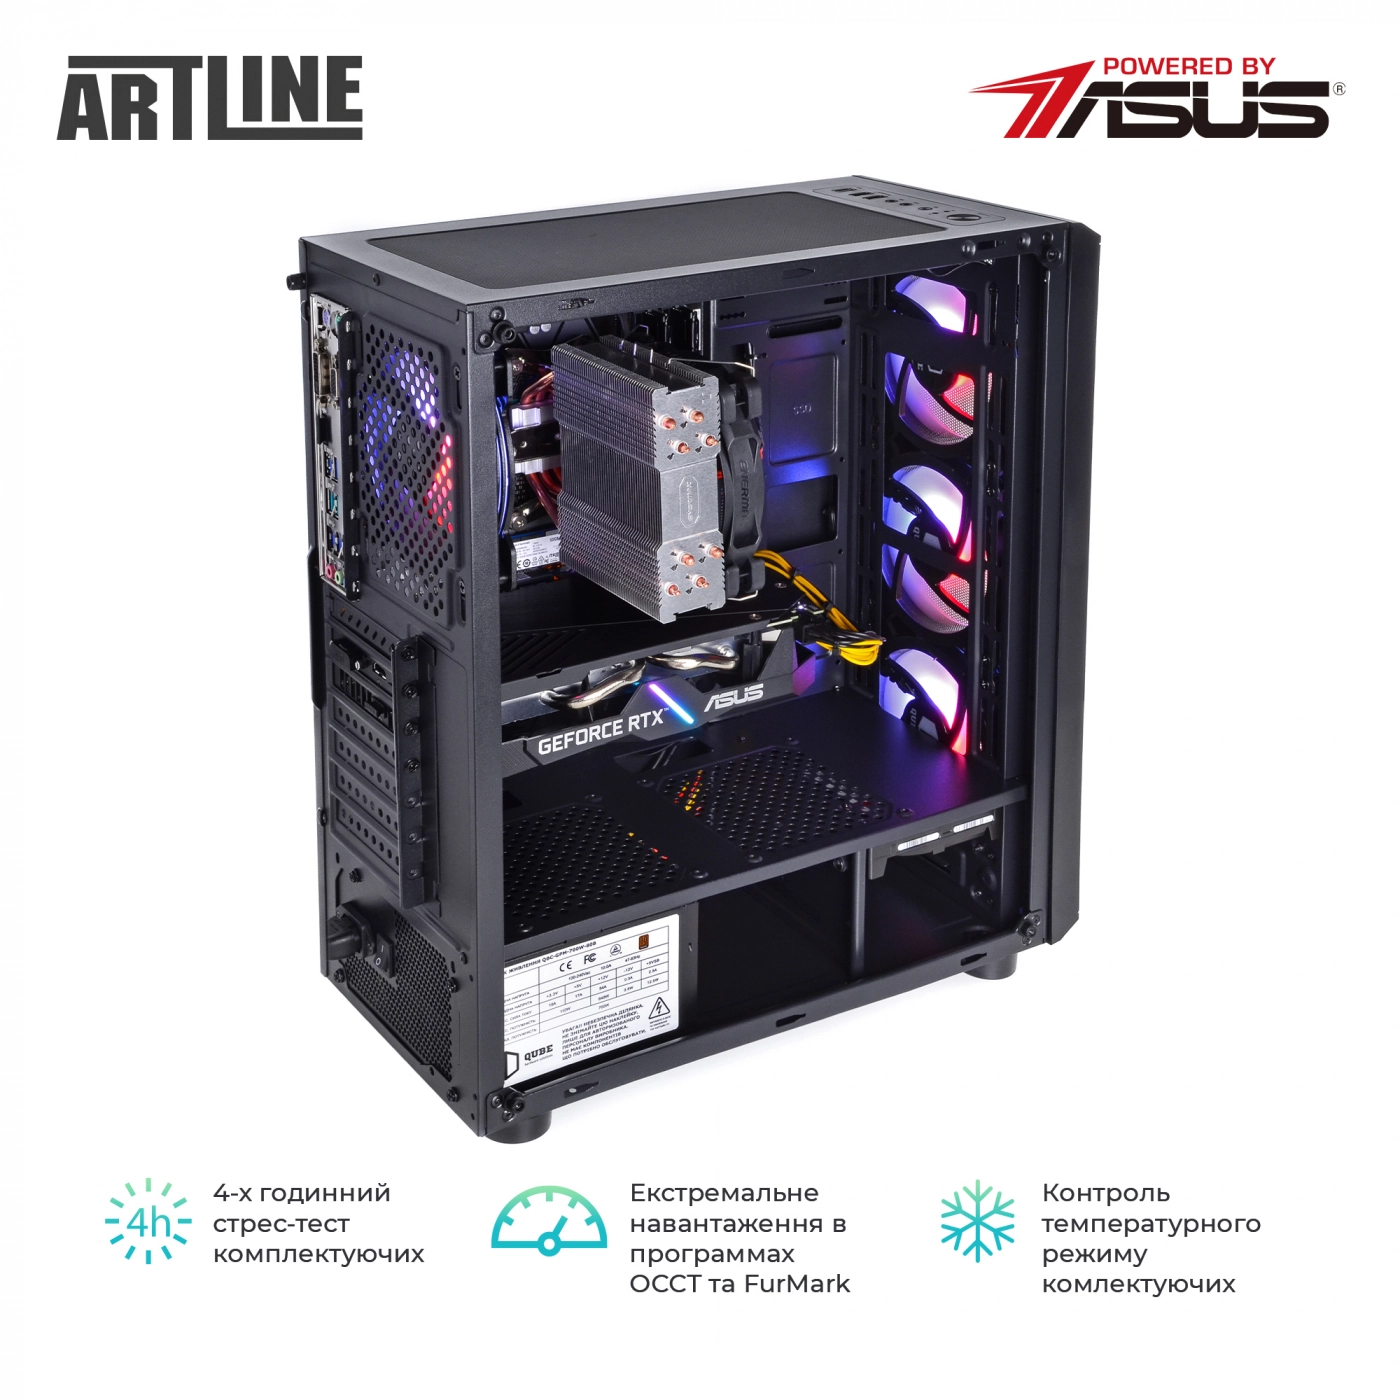 Купить Компьютер ARTLINE Gaming X81v15 - фото 9